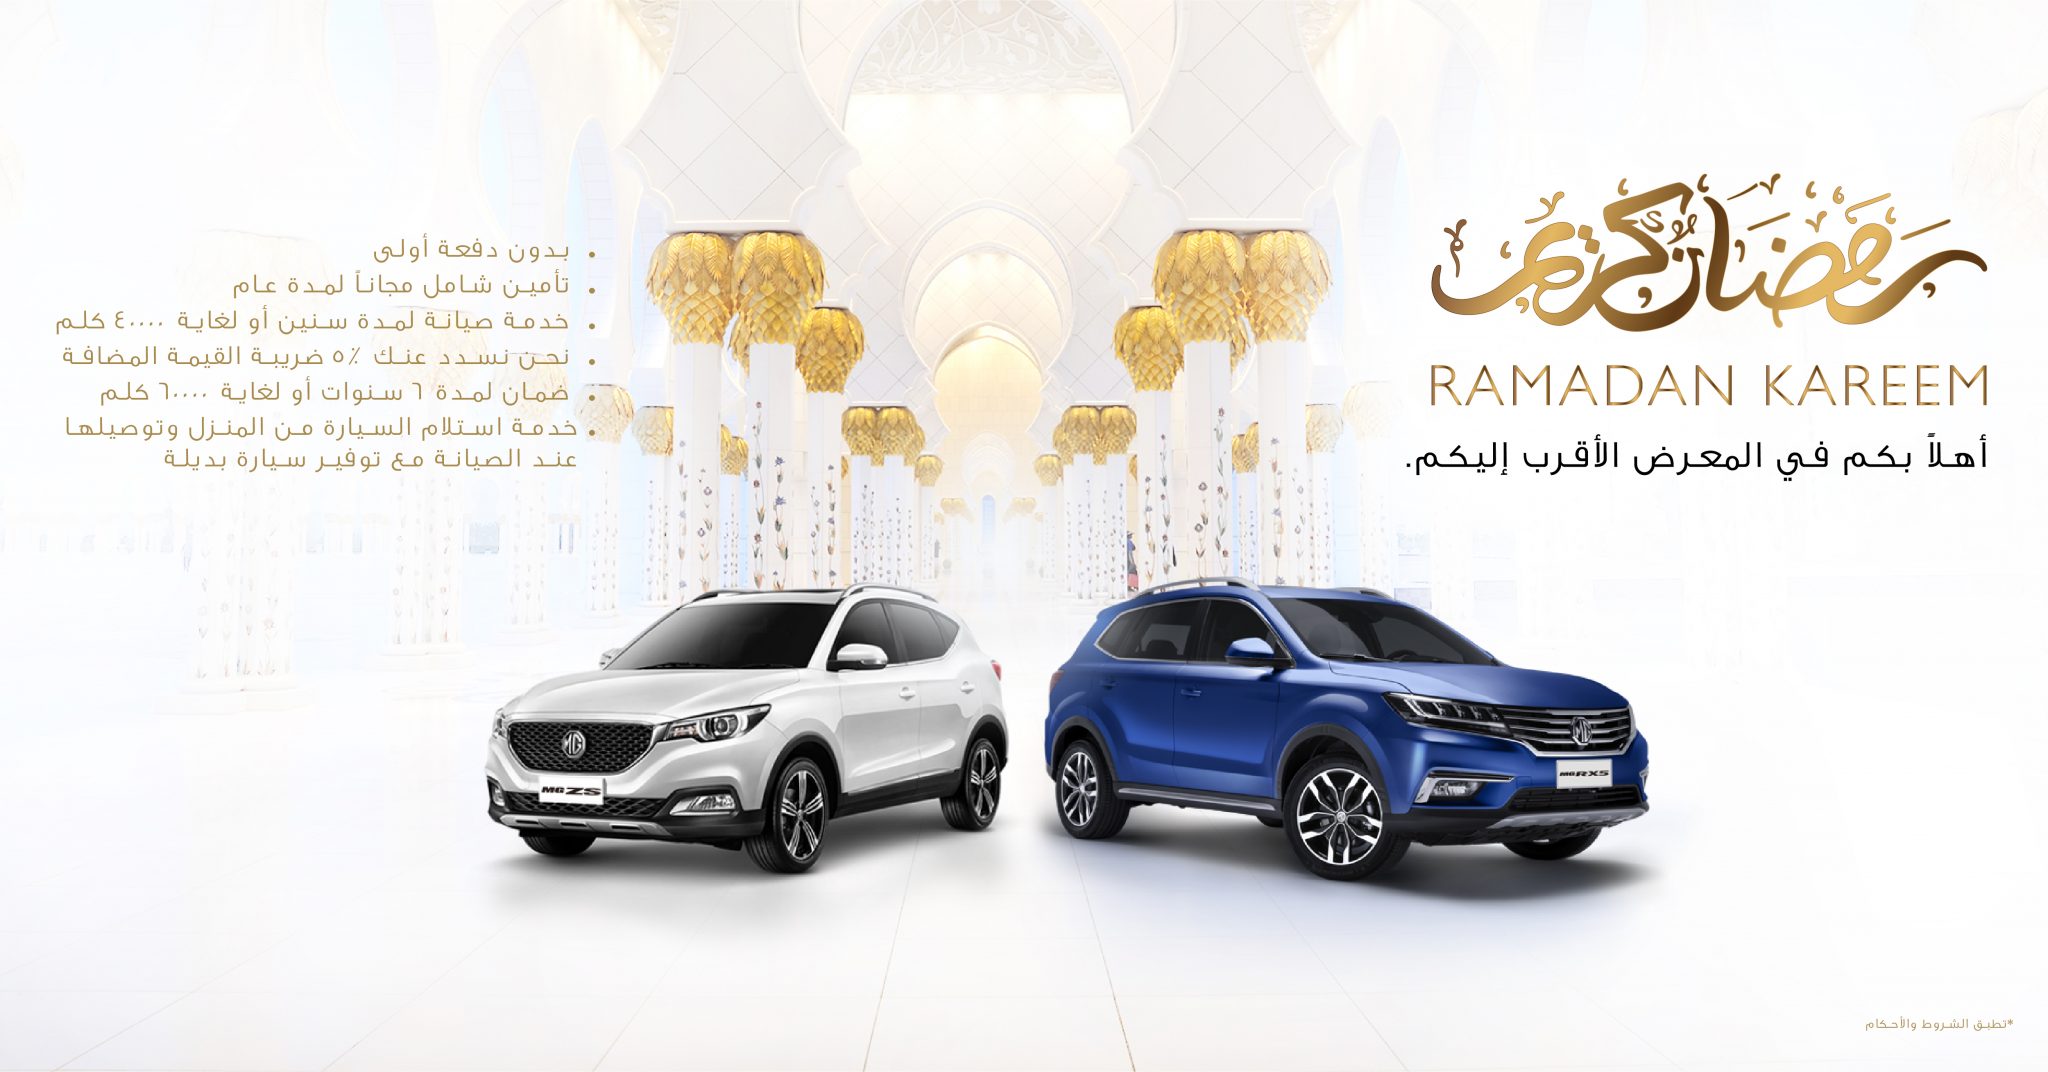 ام جي موتور تطلق عروض مميزة خلال شهر رمضان المبارك في الإمارات العربية المتحدة 7